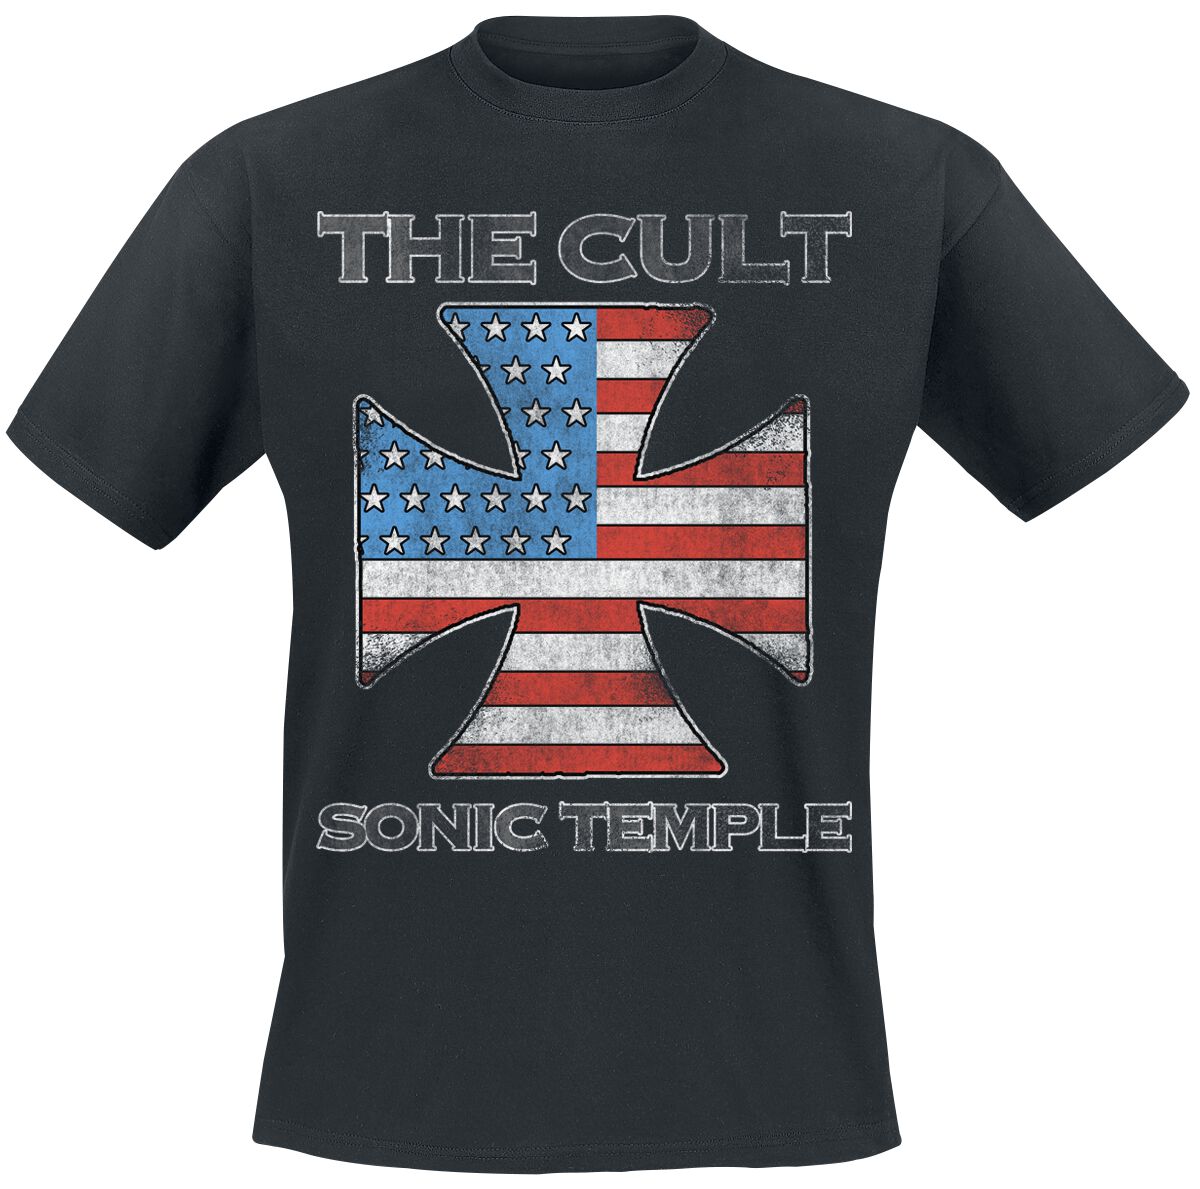 The Cult T-Shirt - US IRON CROSS - S bis 4XL - für Männer - Größe S - schwarz  - Lizenziertes Merchandise!